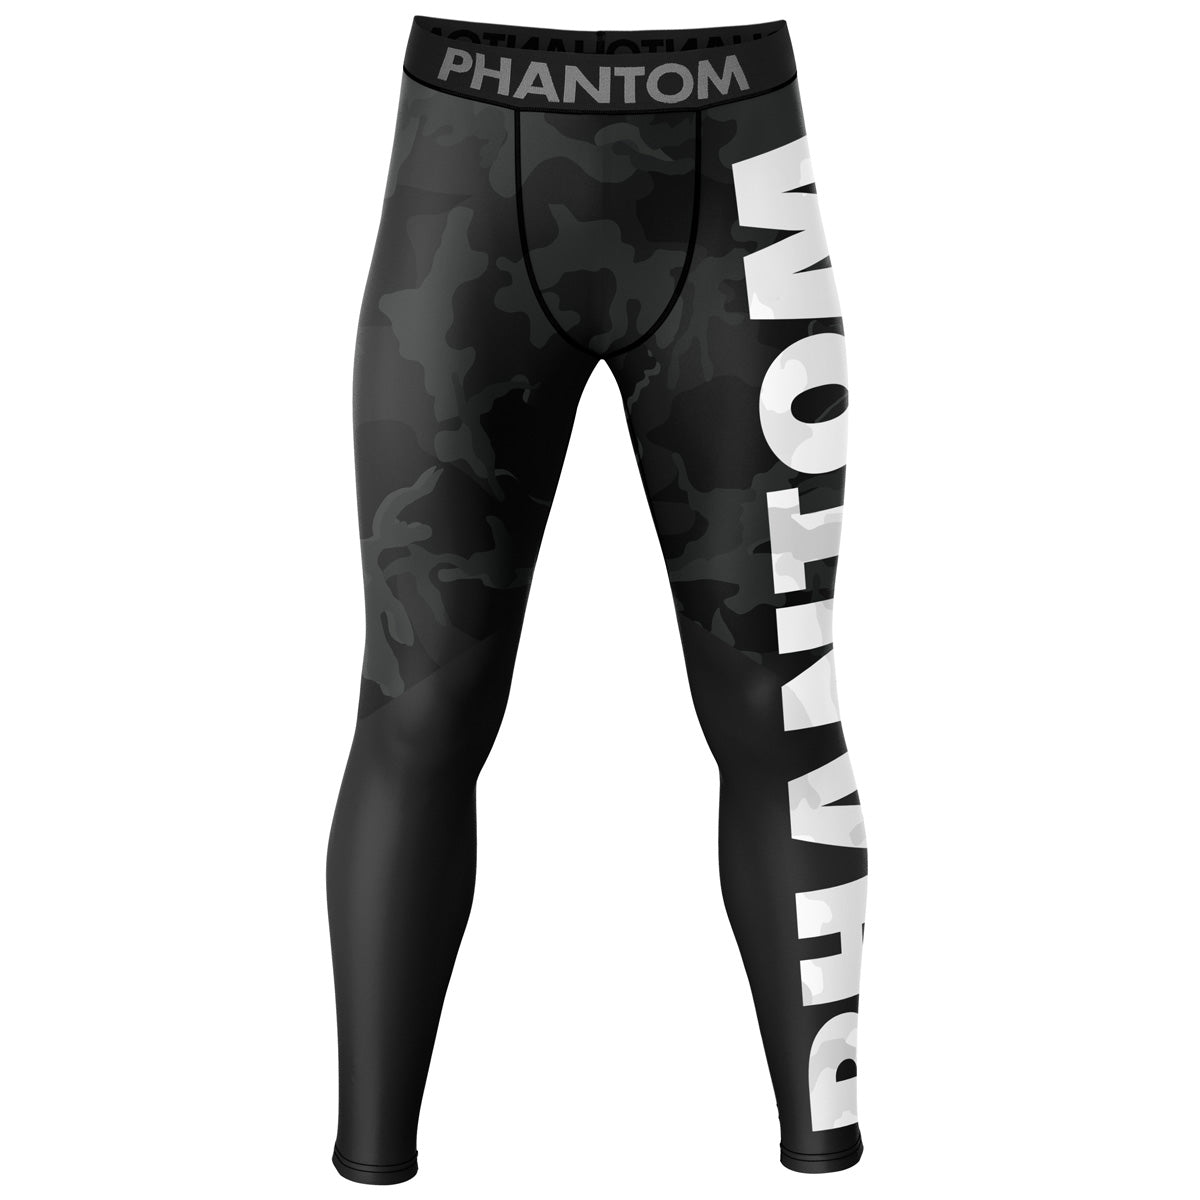 Phantom Compression Tights im Camo Design für Kampfsport Training und Wettkampf. Ideal auf der Matte beim Ringen, Grappling, BJJ oder auch im MMA: